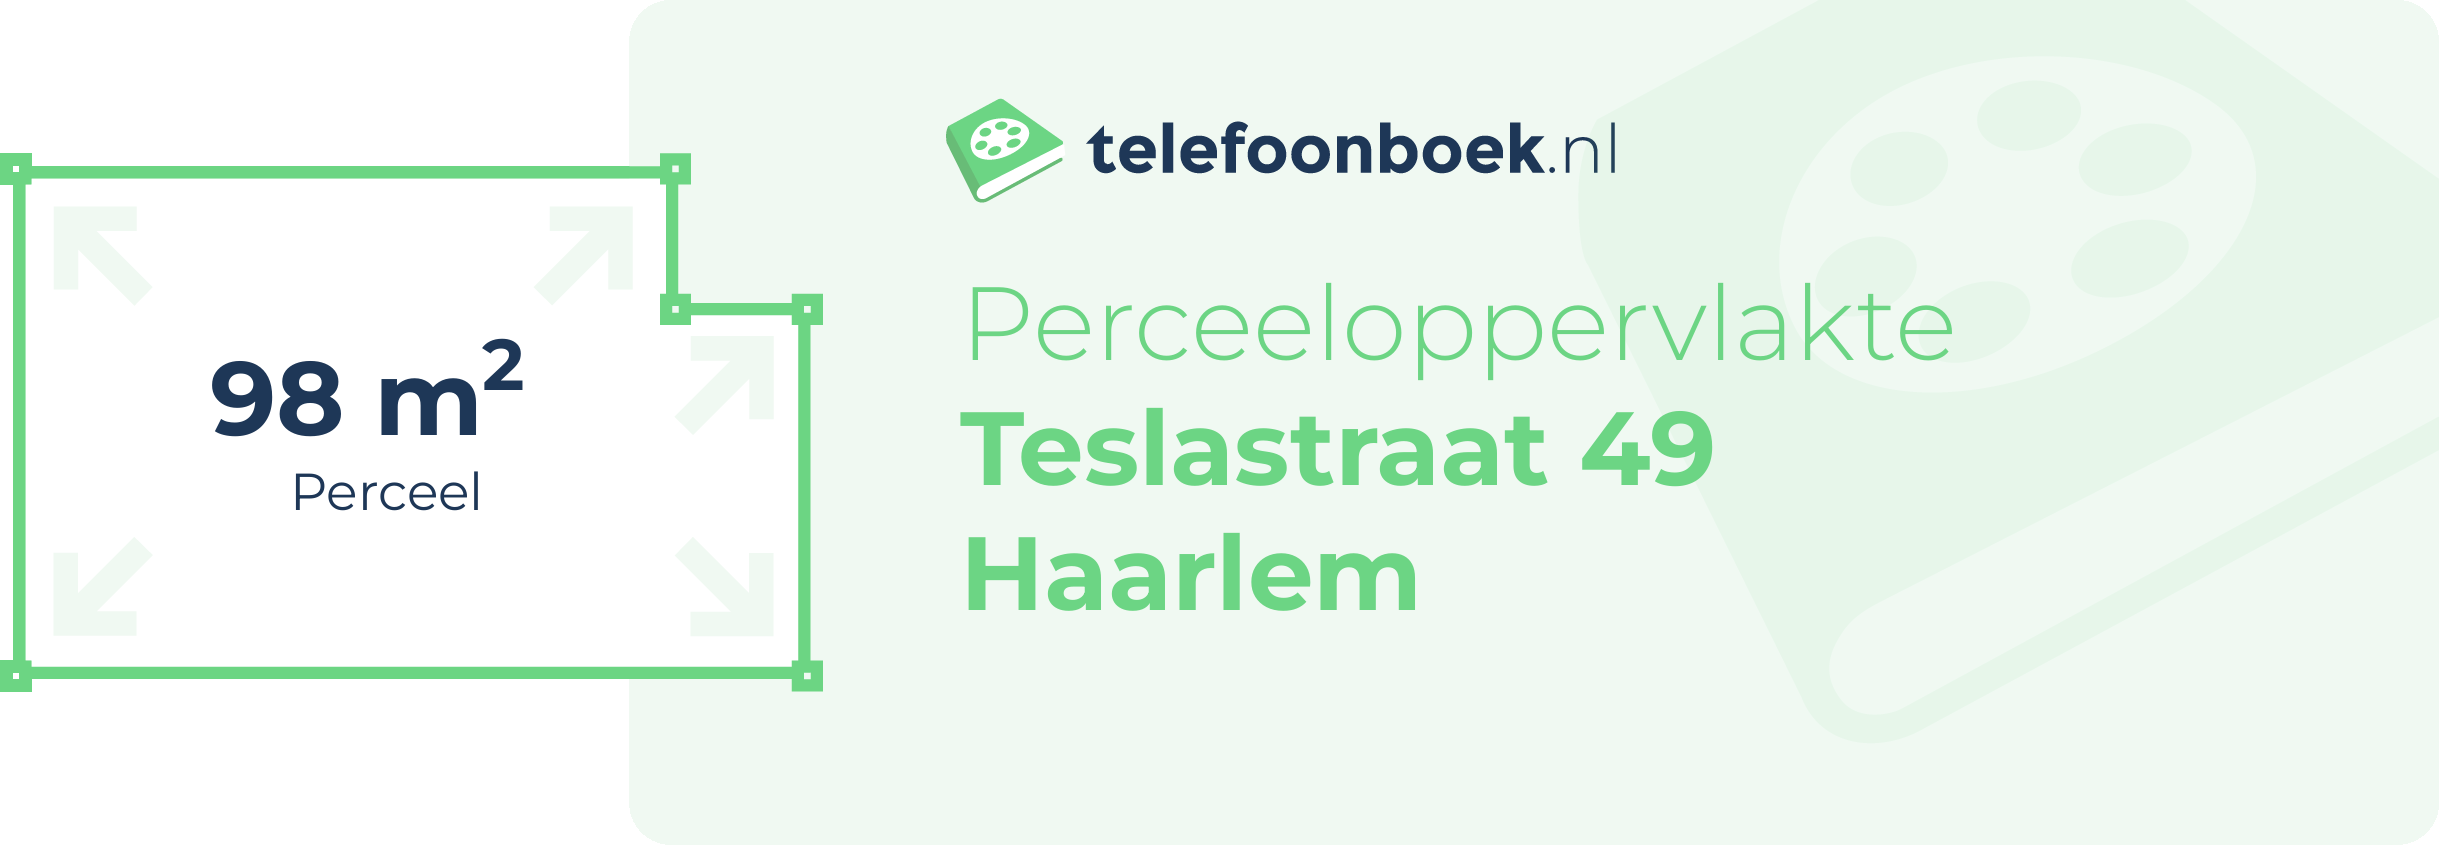 Perceeloppervlakte Teslastraat 49 Haarlem